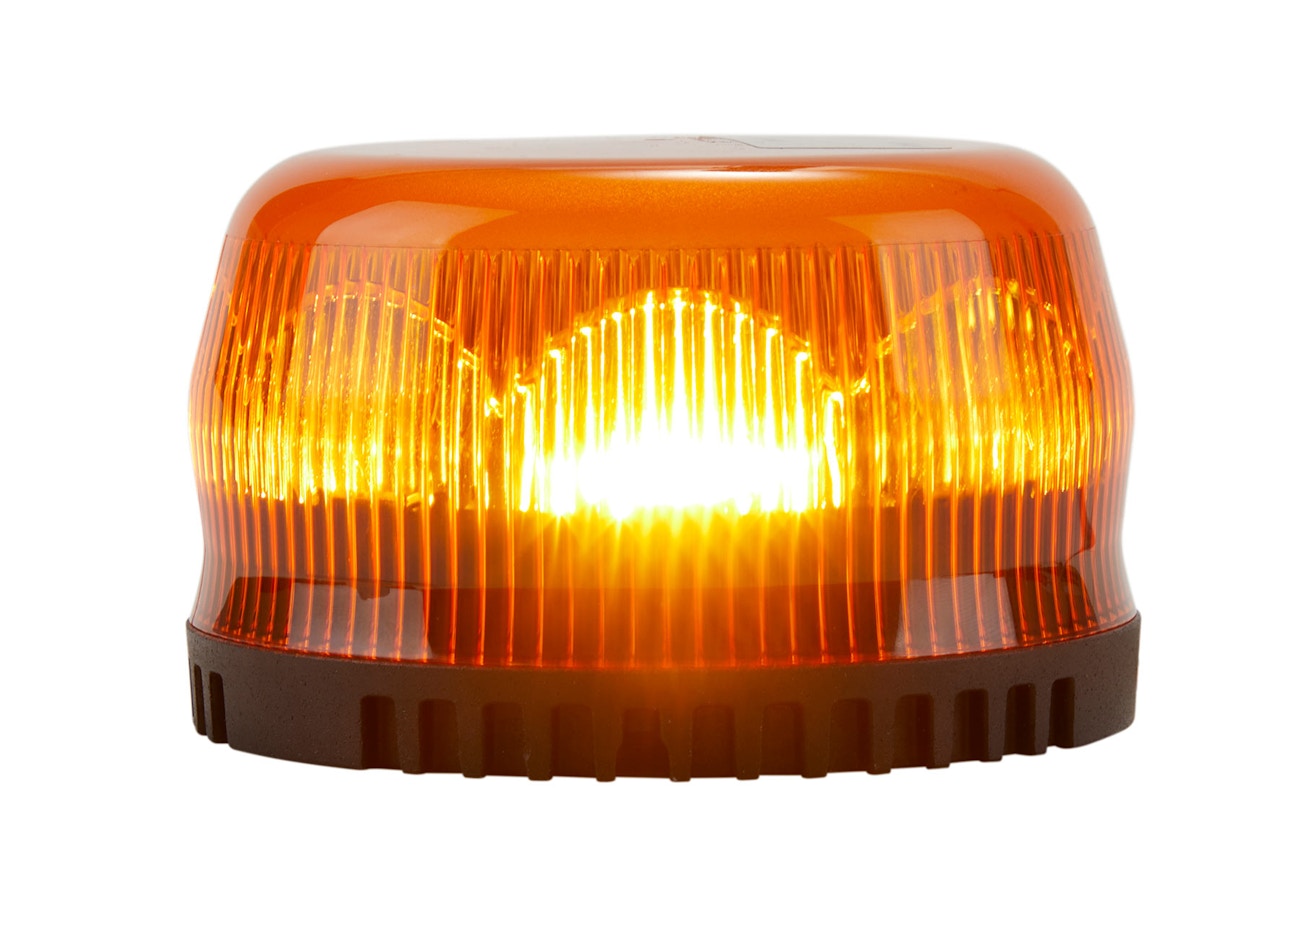 Gyrophare LED FT-151 LED à visser Orange - Global Remorques